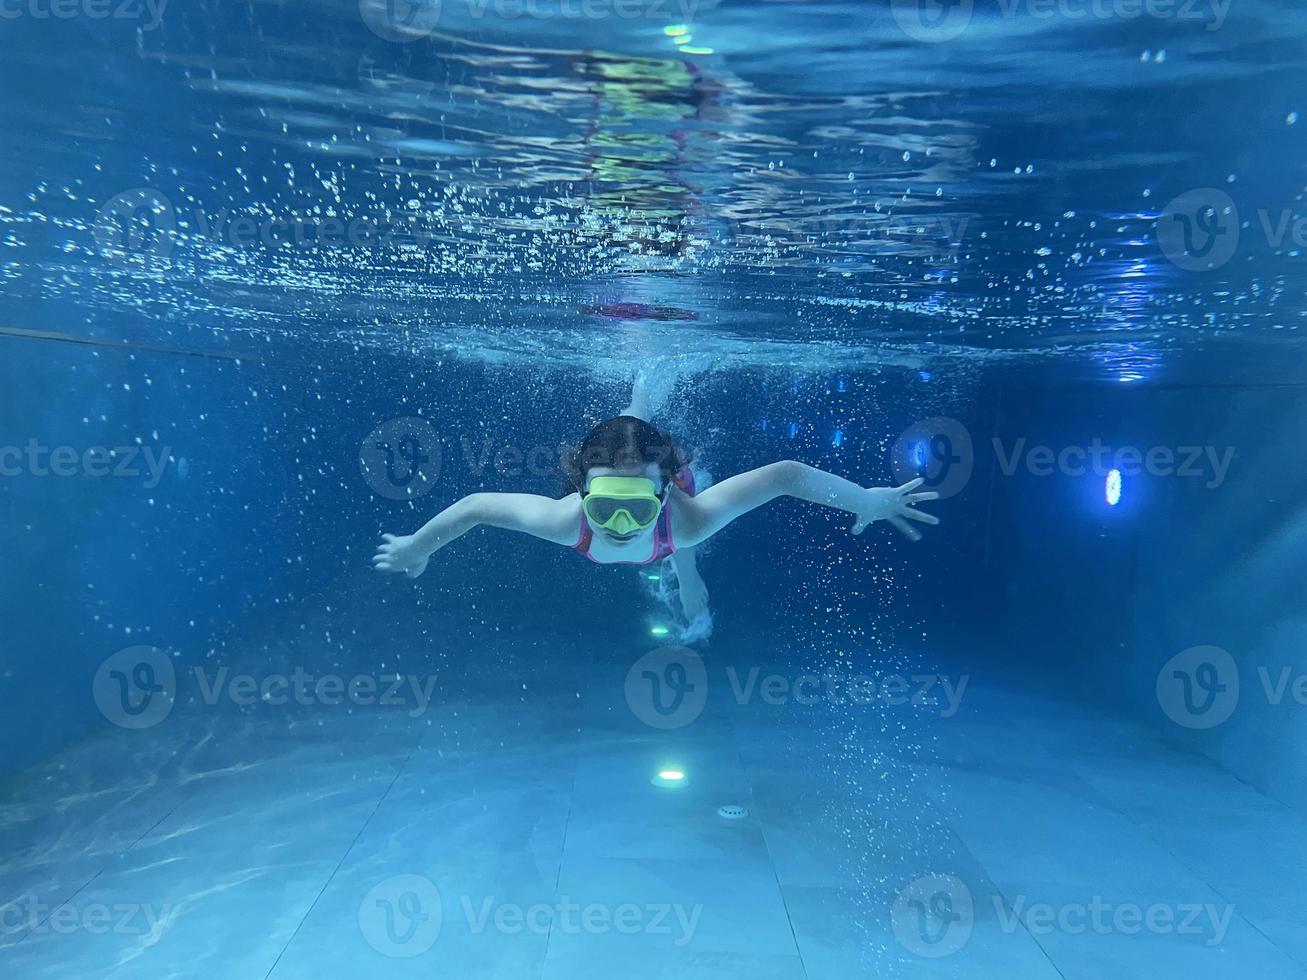 lächelndes Kind mit Brille schwimmen, mit Spaß im Pool tauchen - tief unter Wasser springen. gesunder lebensstil, menschen wassersportaktivitäten im sommer. foto